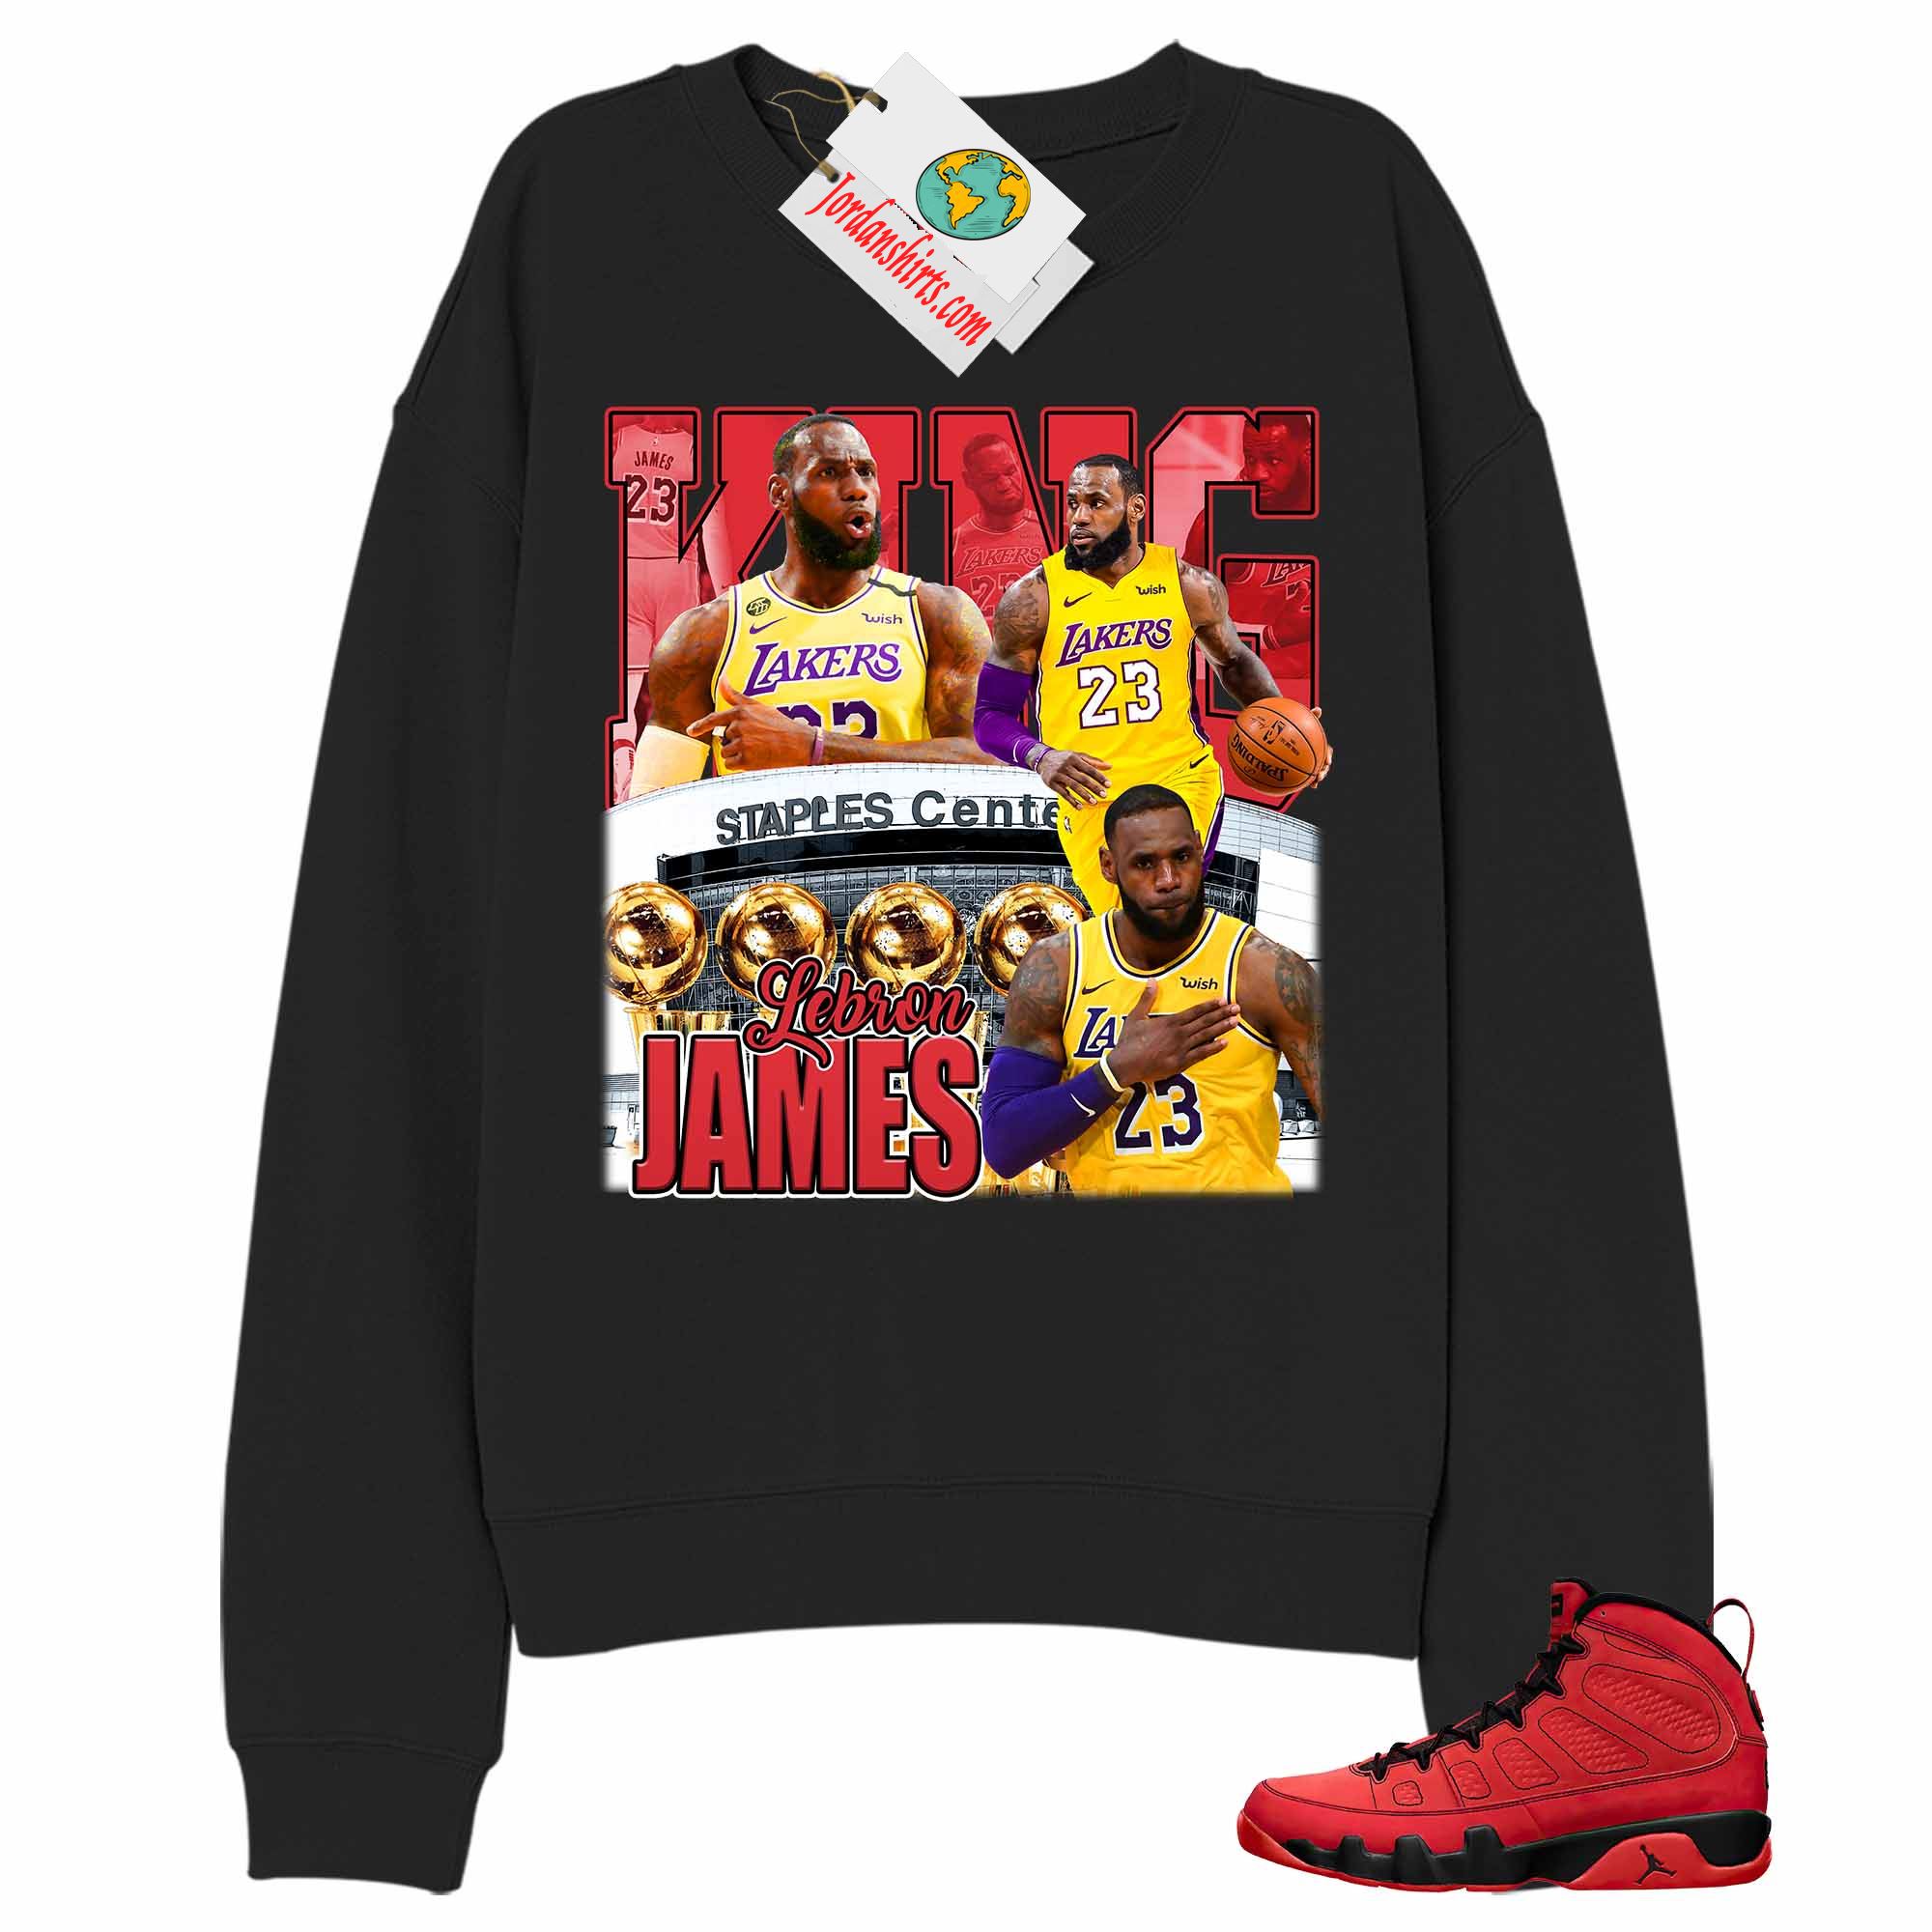 Jordan 9 Sweatshirt, Vintage Basketball Lebron James Black Sweatshirt Air Jordan 9 Chile Red 9s Size Up To 5xl